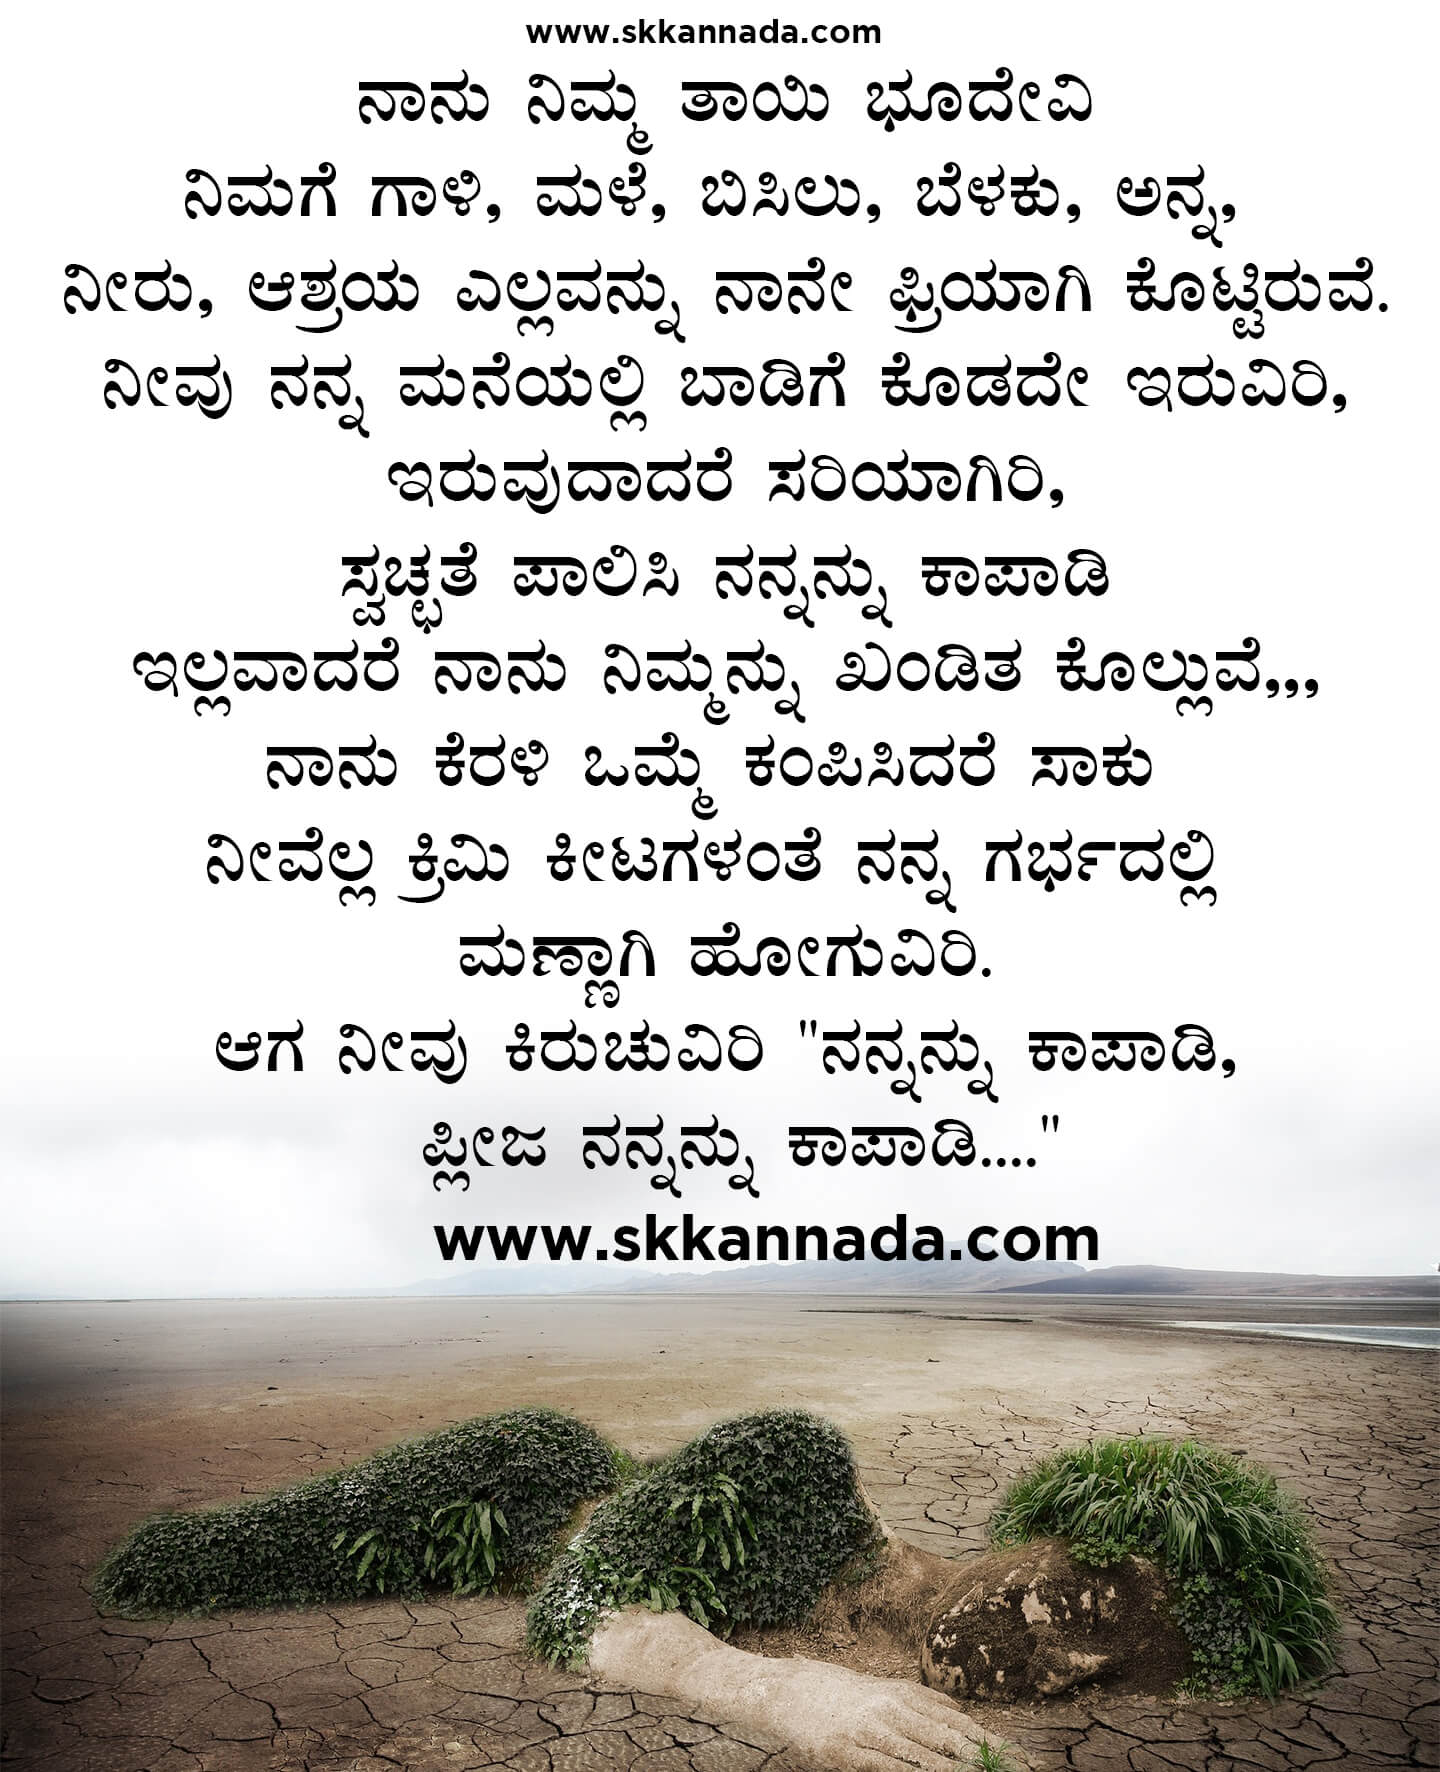 Nature Parisara Poem Kavanagalu Quotes in Kannada